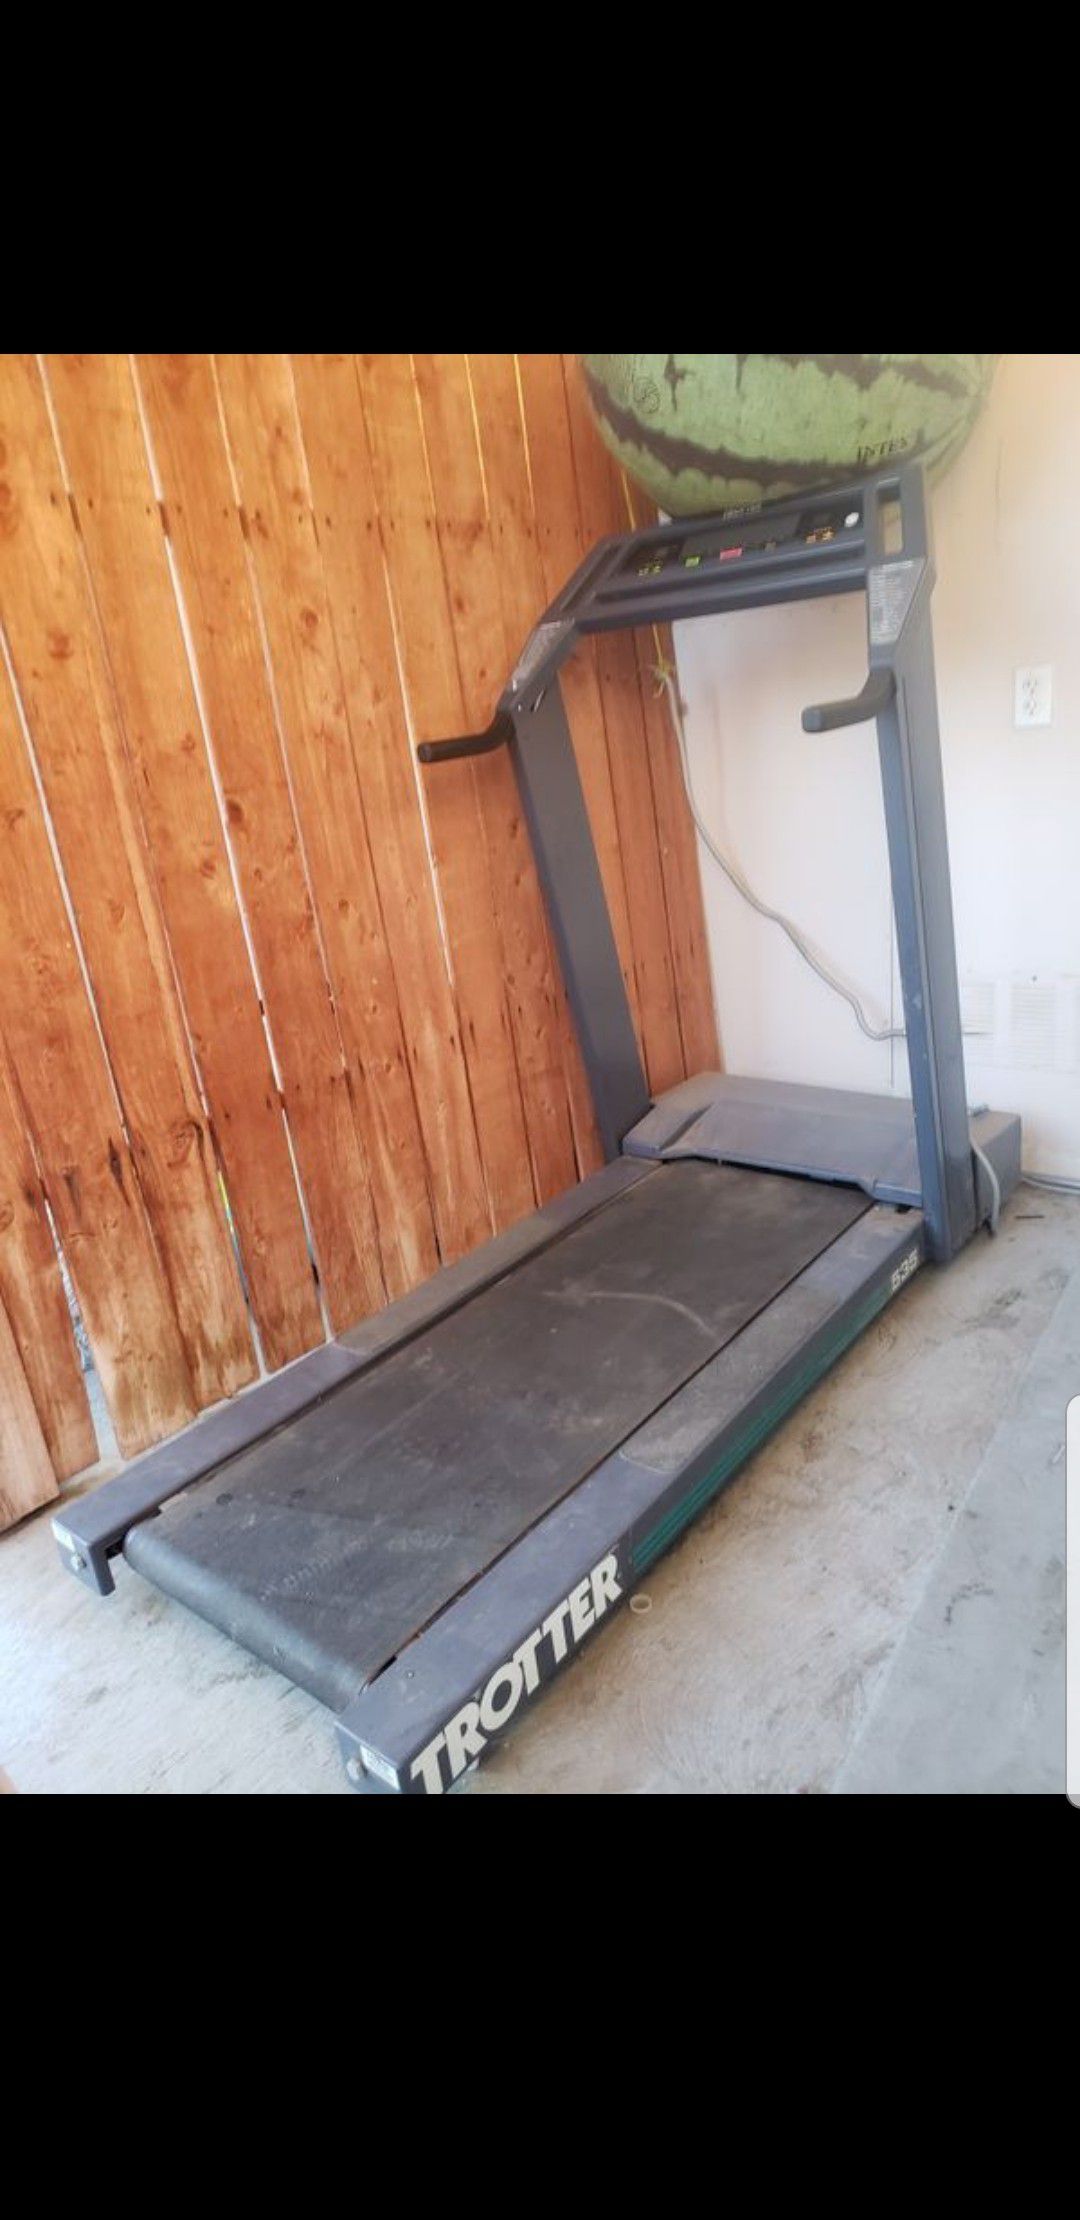 Treadmill corredora caminadora good condition